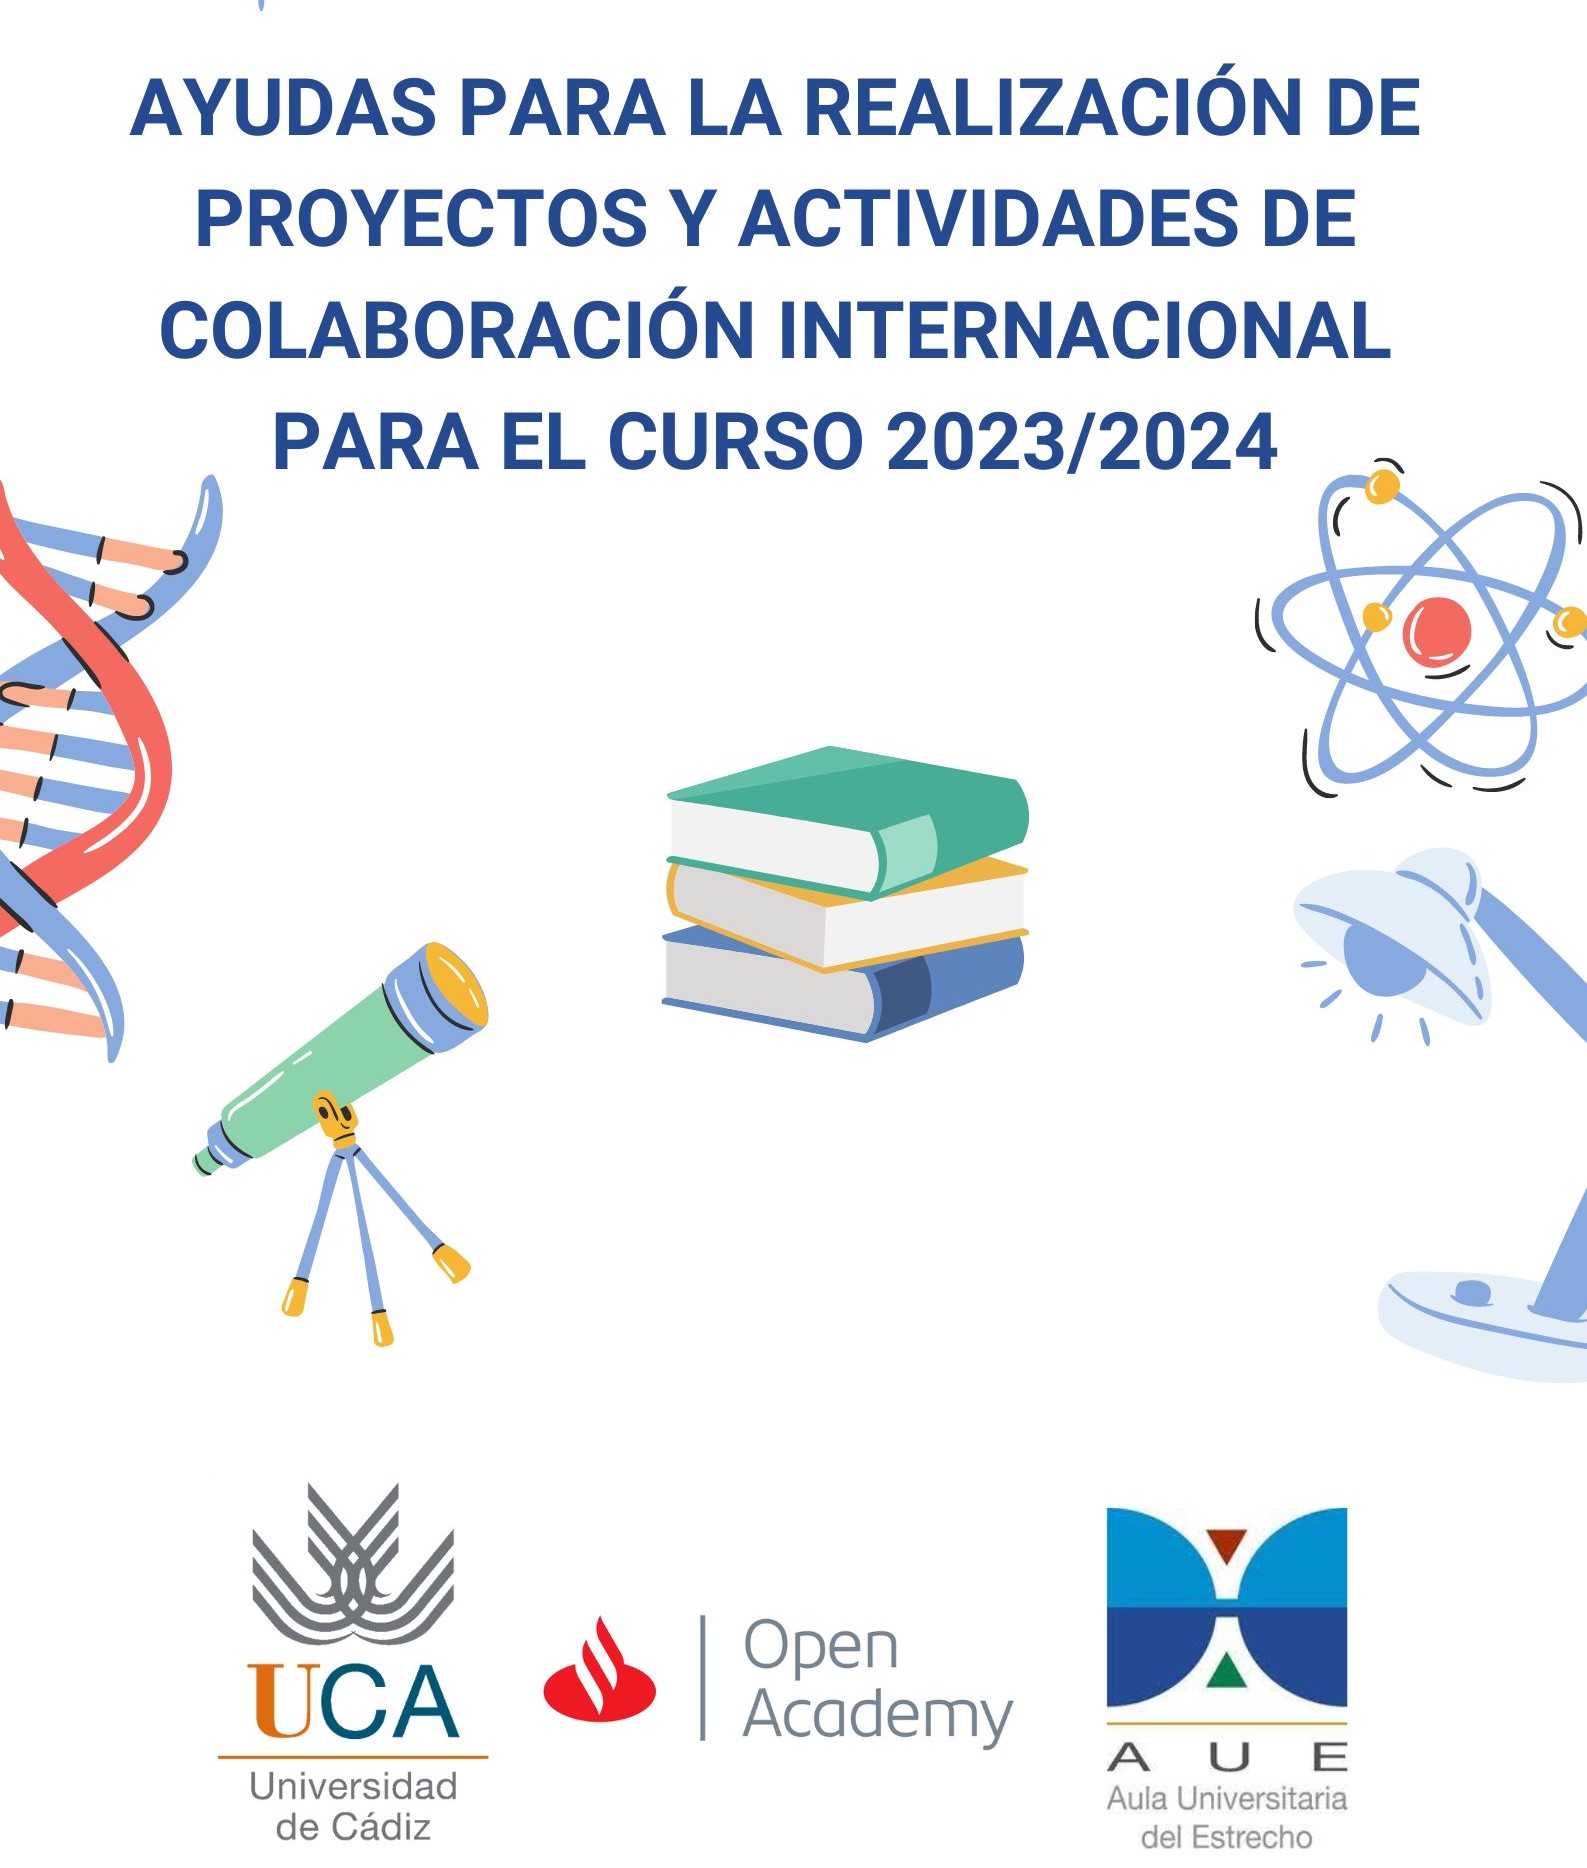 AYUDAS PARA LA REALIZACIÓN DE PROYECTOS Y ACTIVIDADES DE COLABORACIÓN INTERNACIONAL PARA EL CURSO 2023/2024